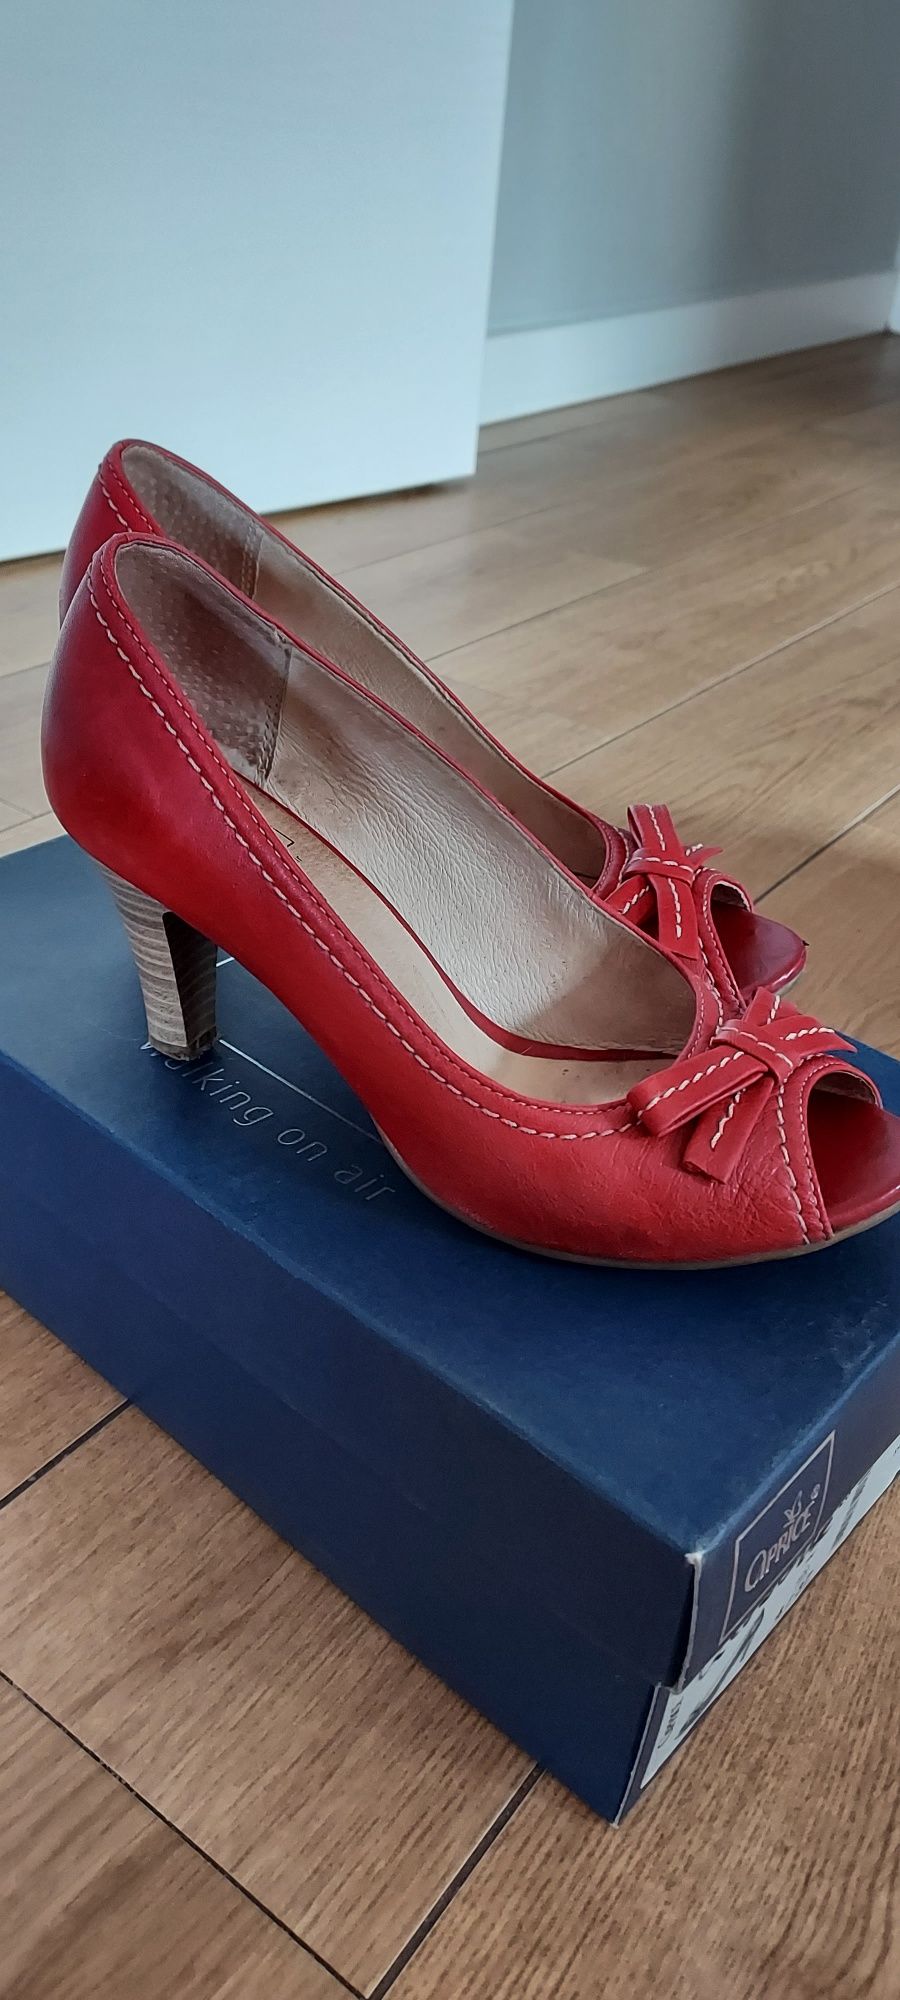 Buty czółenka Caprice r. 37 czerwone skórzane